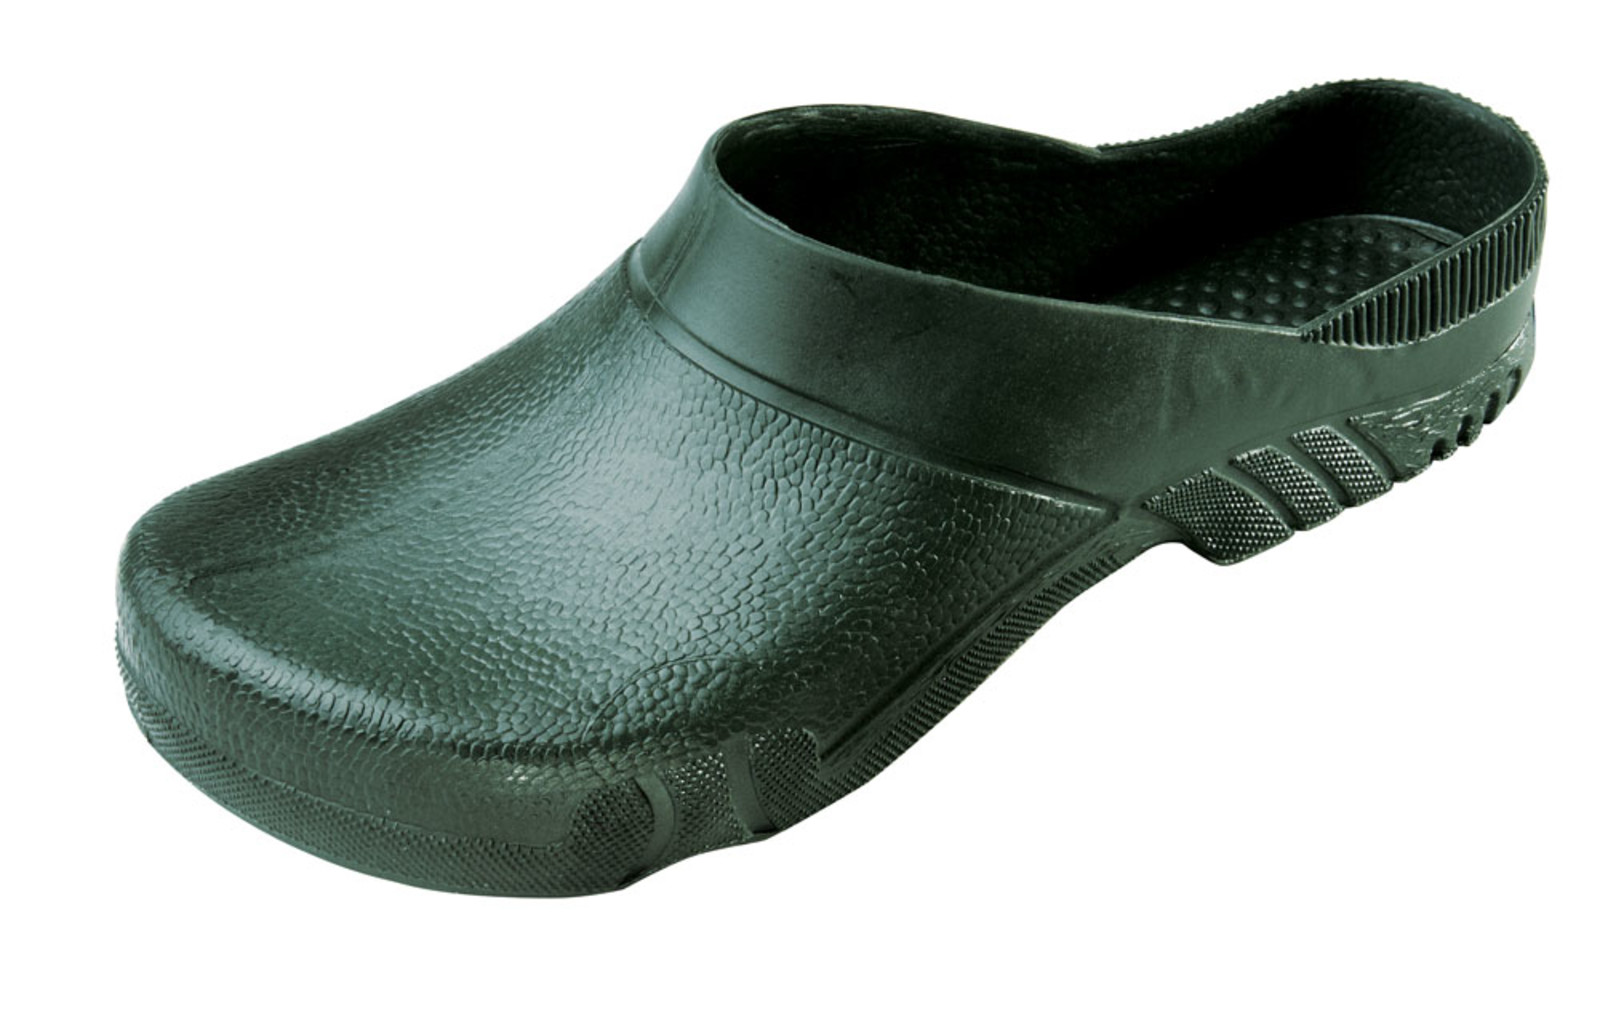 Galoše Boots Birba  - veľkosť: 37-38, farba: olivová zelená